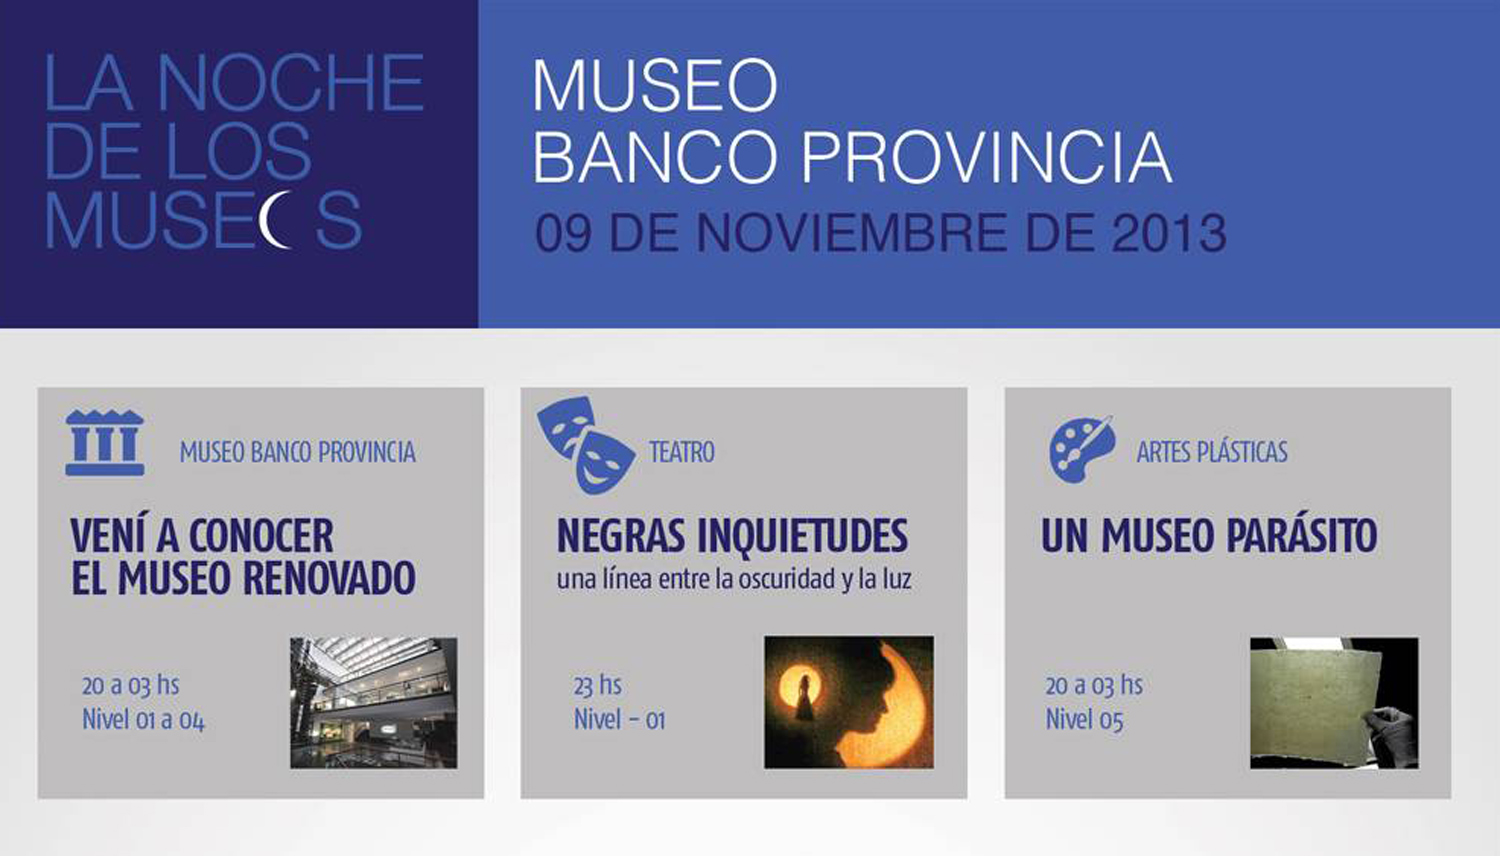 La Noche de los Museos. Museo Banco Provincia 2qavdds